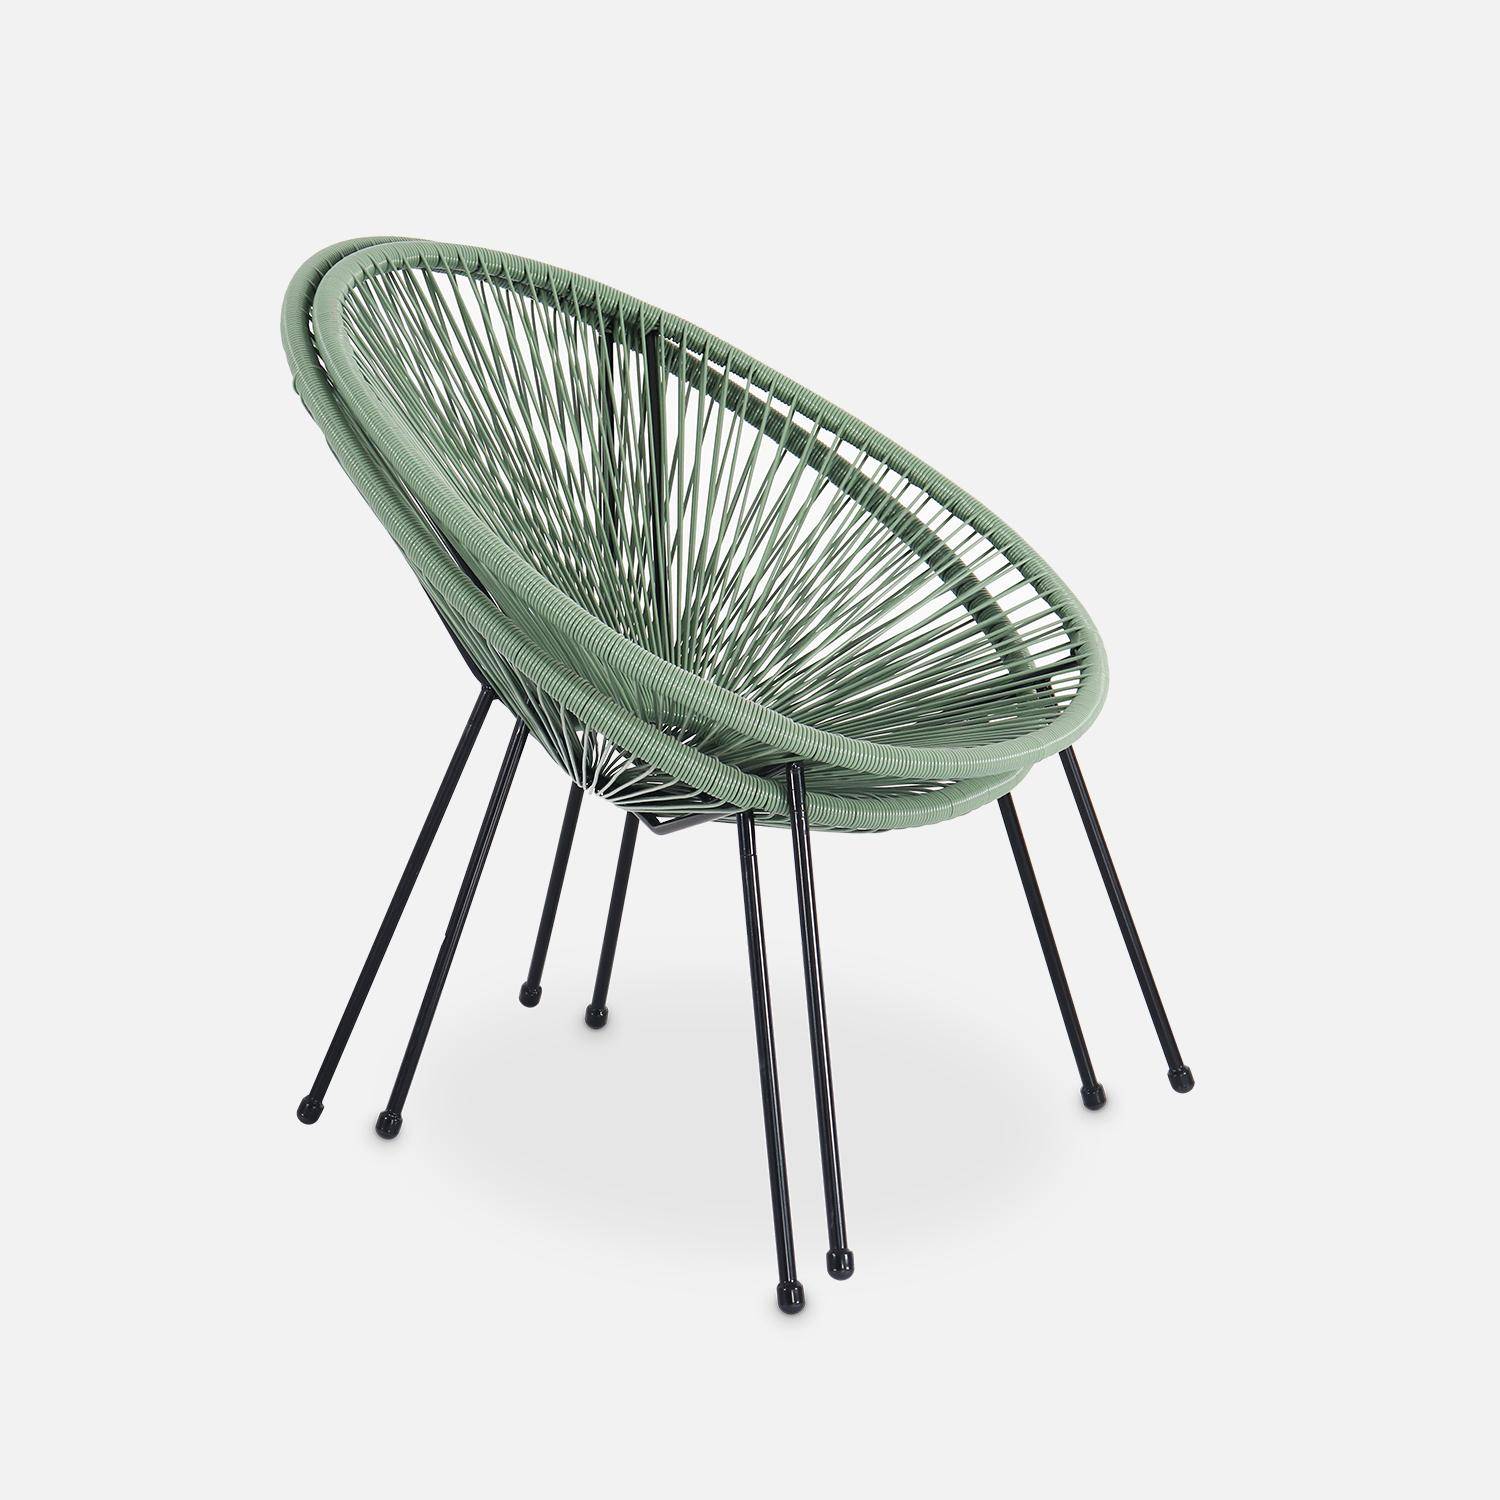 Lot de 2 fauteuils design Oeuf - Acapulco Vert de gris- Fauteuils 4 pieds design rétro, cordage plastique, intérieur / extérieur Photo6